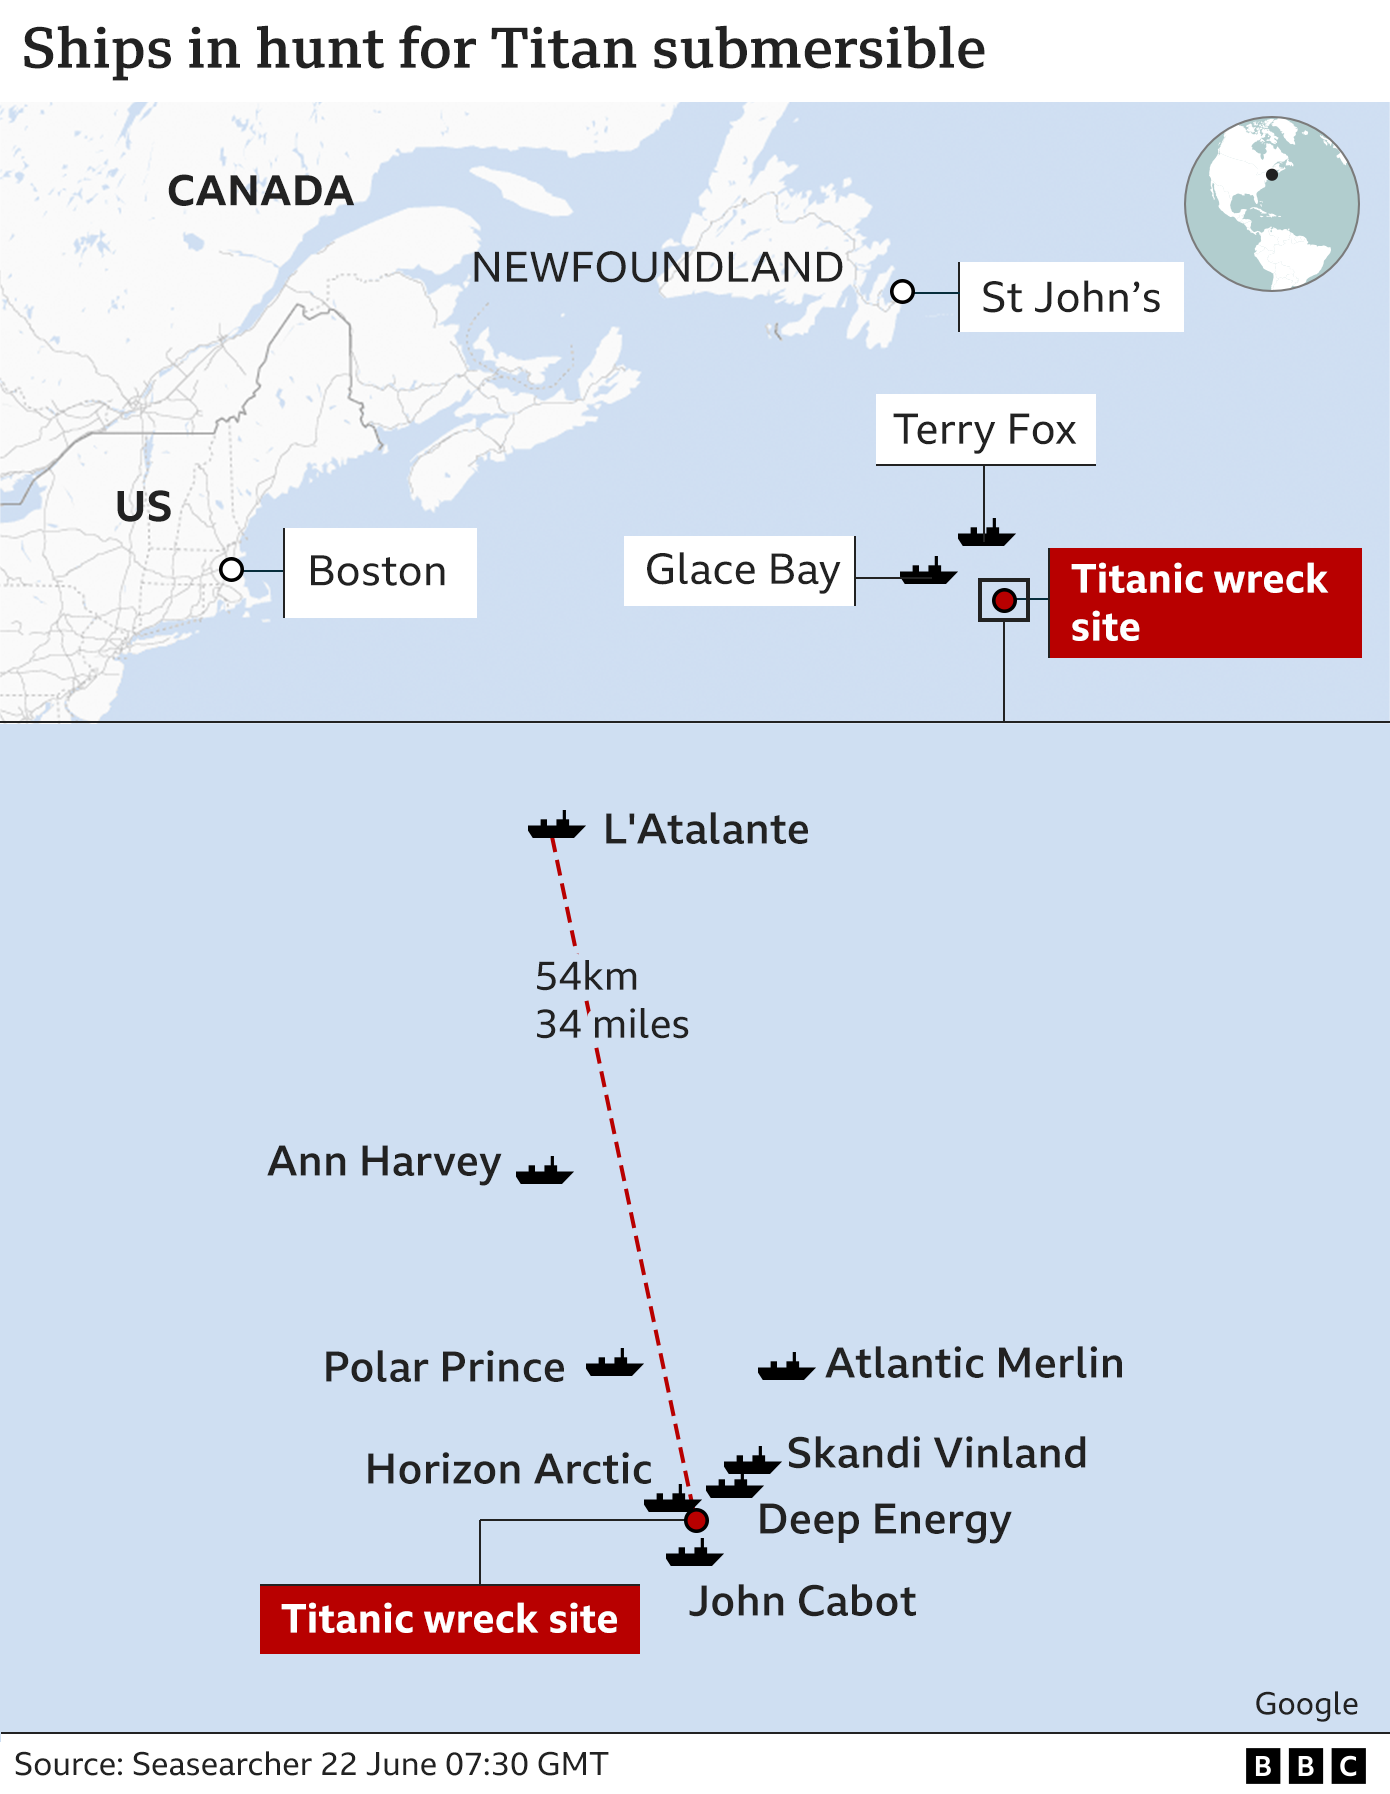 Изображения четырех кораблей, участвующих в спасательной операции L'Atalante, Horizon Арктика, Сканди Винланд и Джон Кэбот